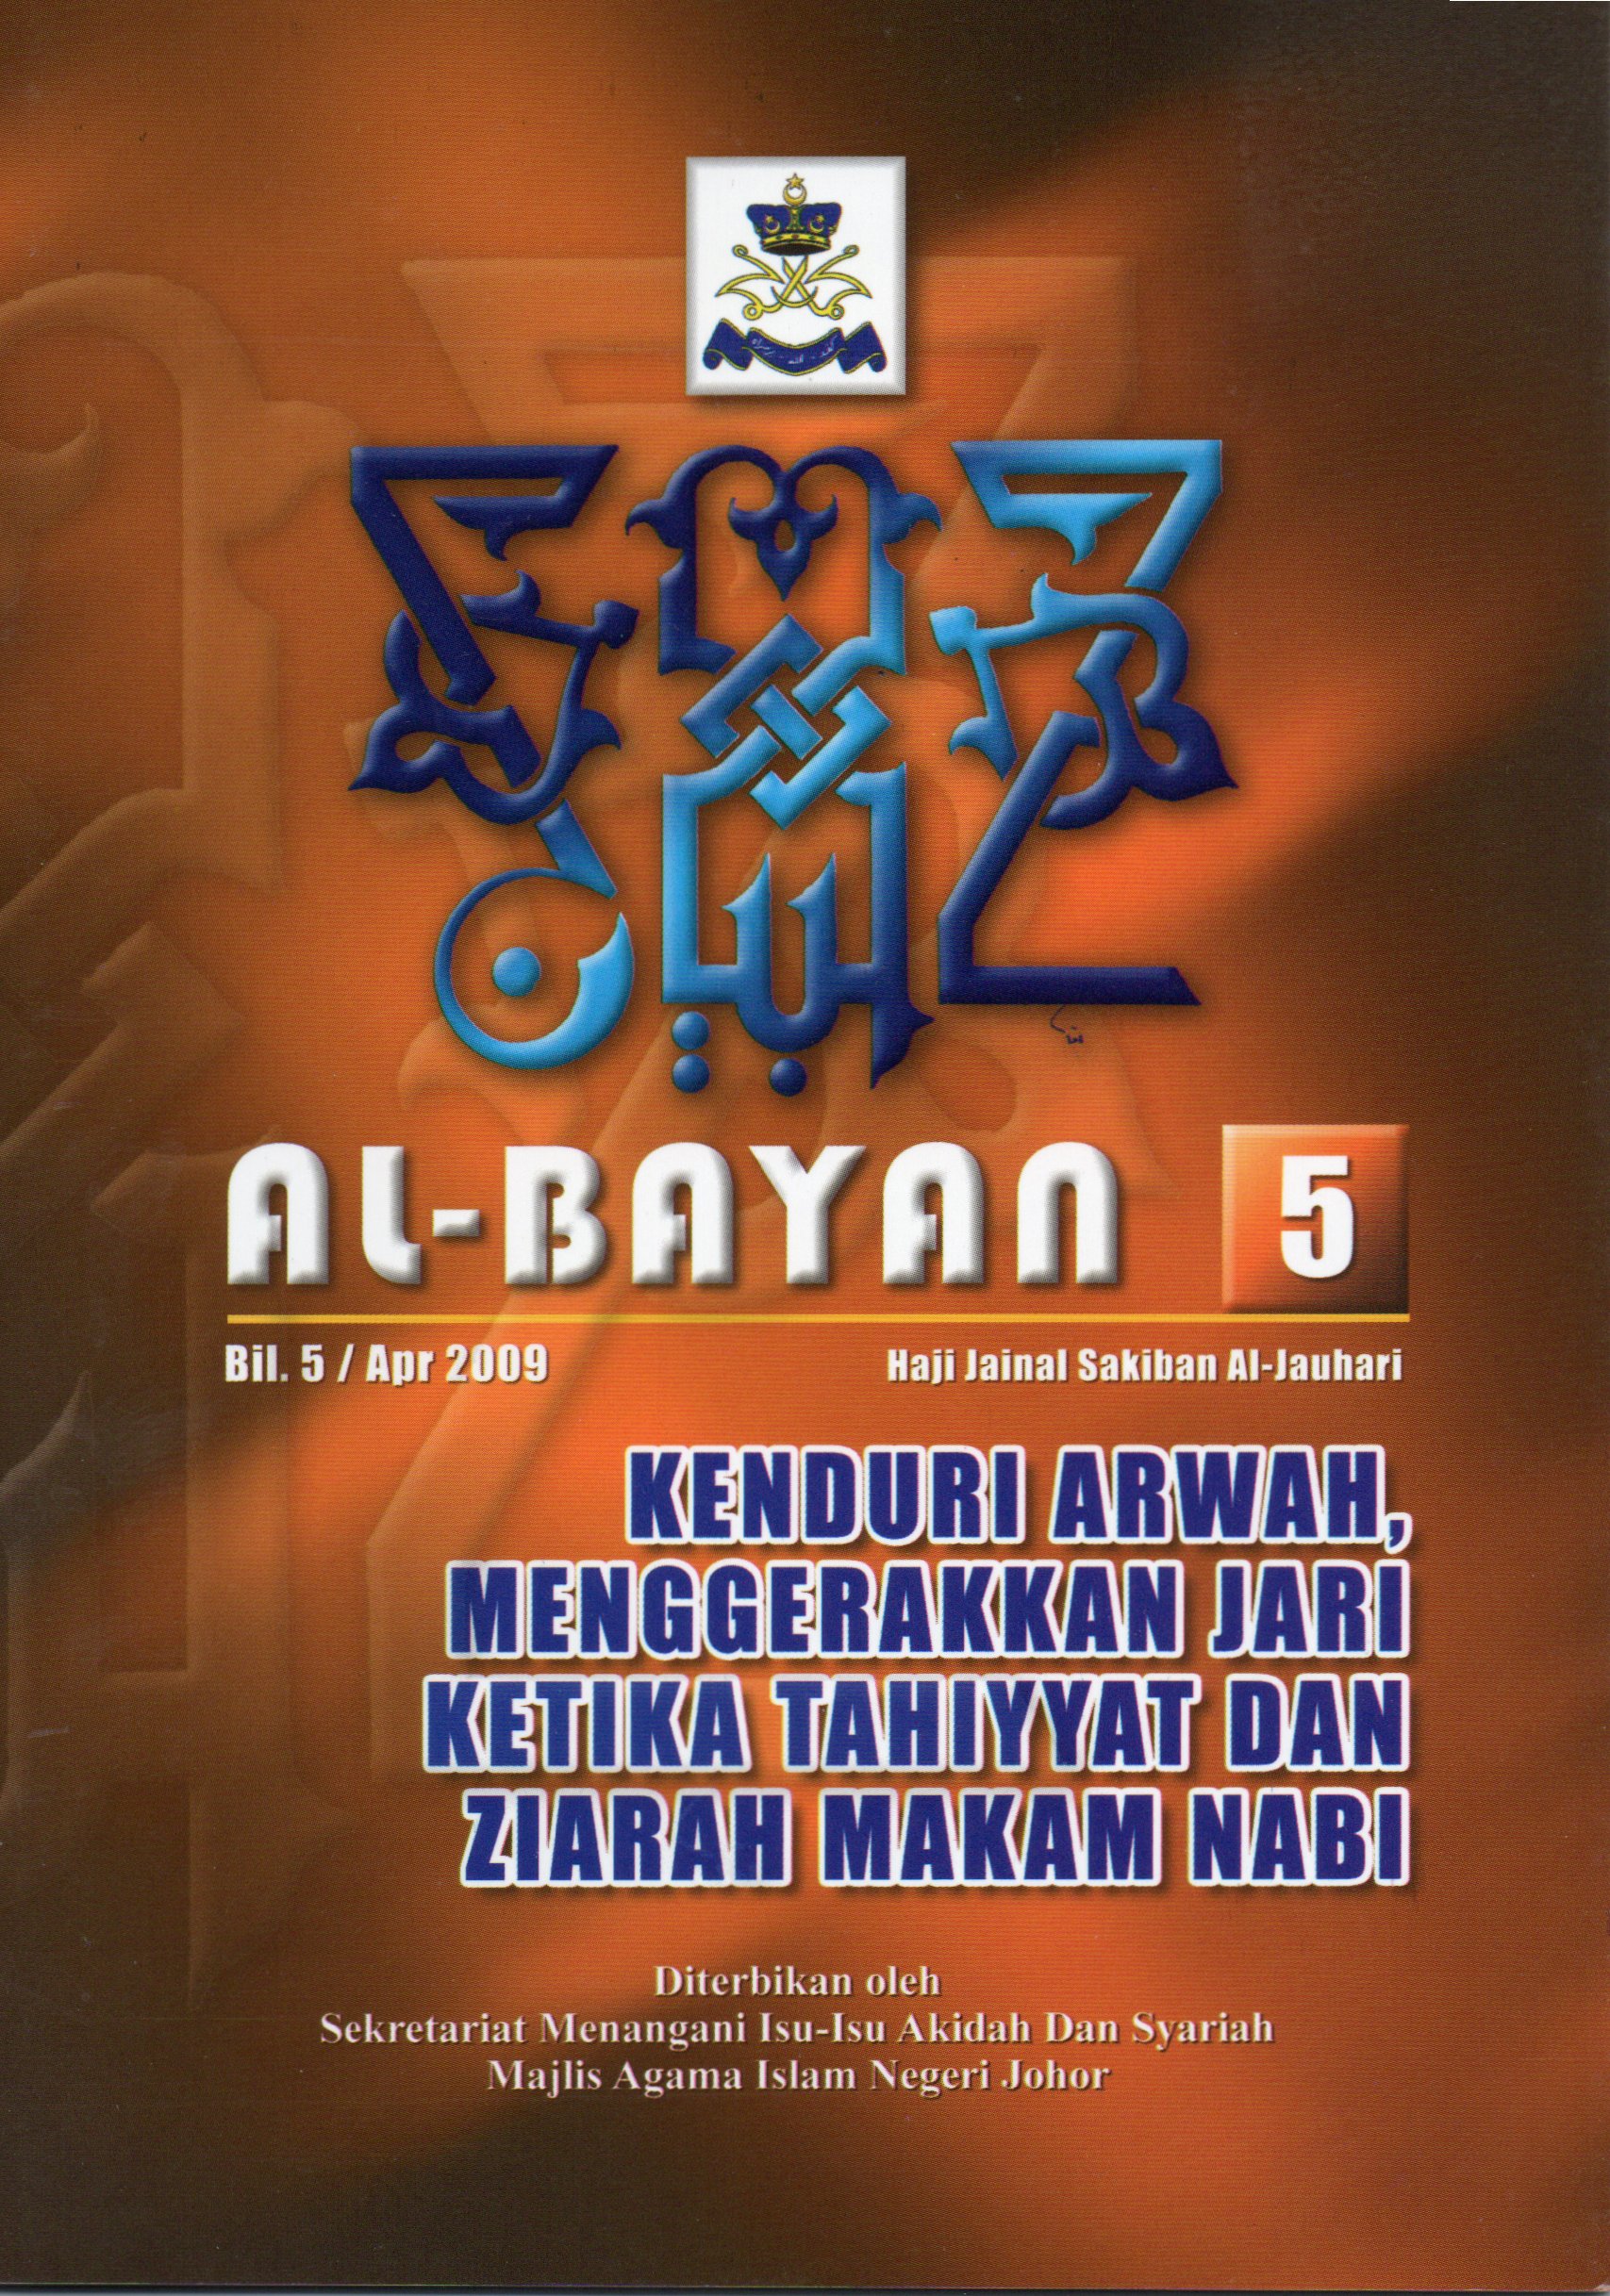 Al-Bayan 5: kenduri arwah, menggerakkan jari ketika tahiyyat dan ziarah makam nabi